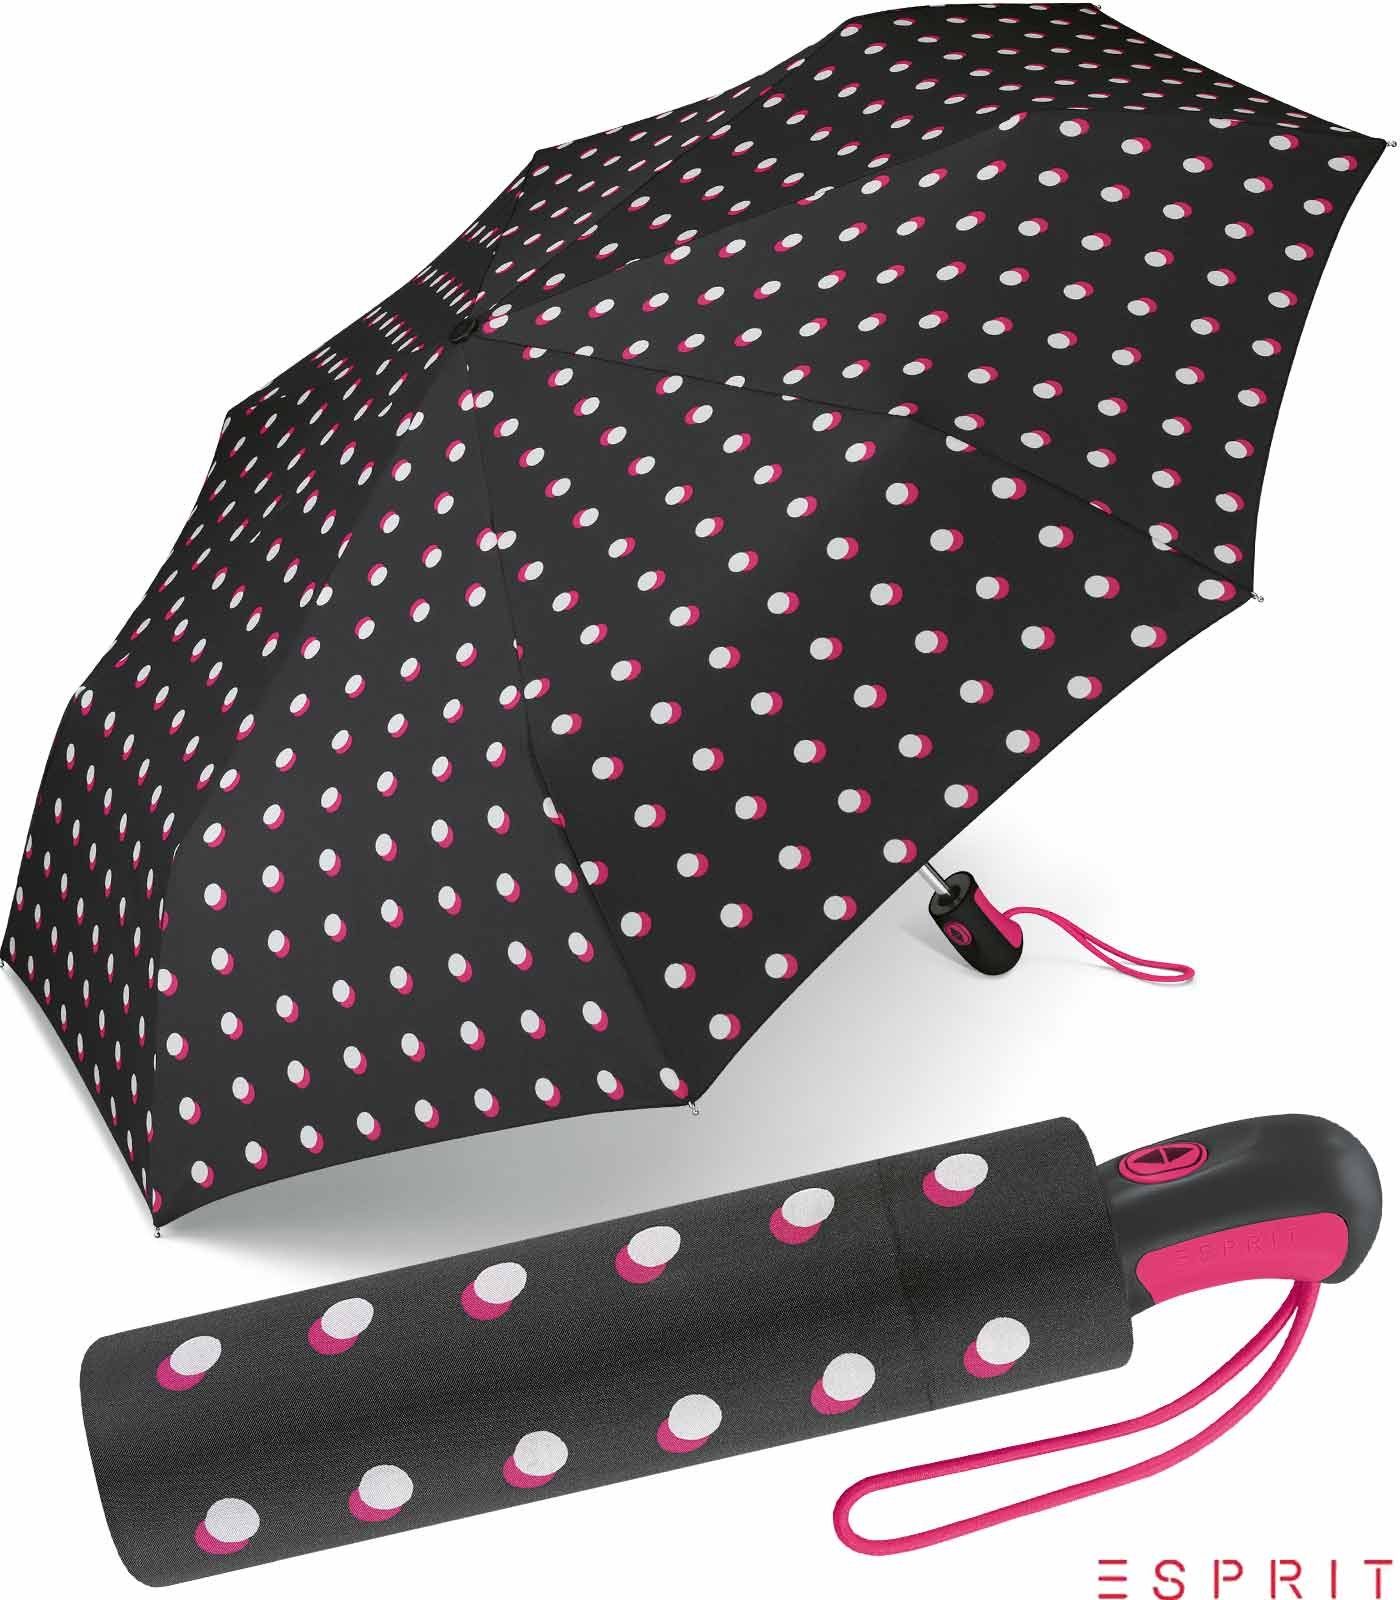 Esprit Taschenregenschirm schöner Schirm für Damen mit Auf-Zu Automatik, das besondere Design als Eyecatcher schwarz